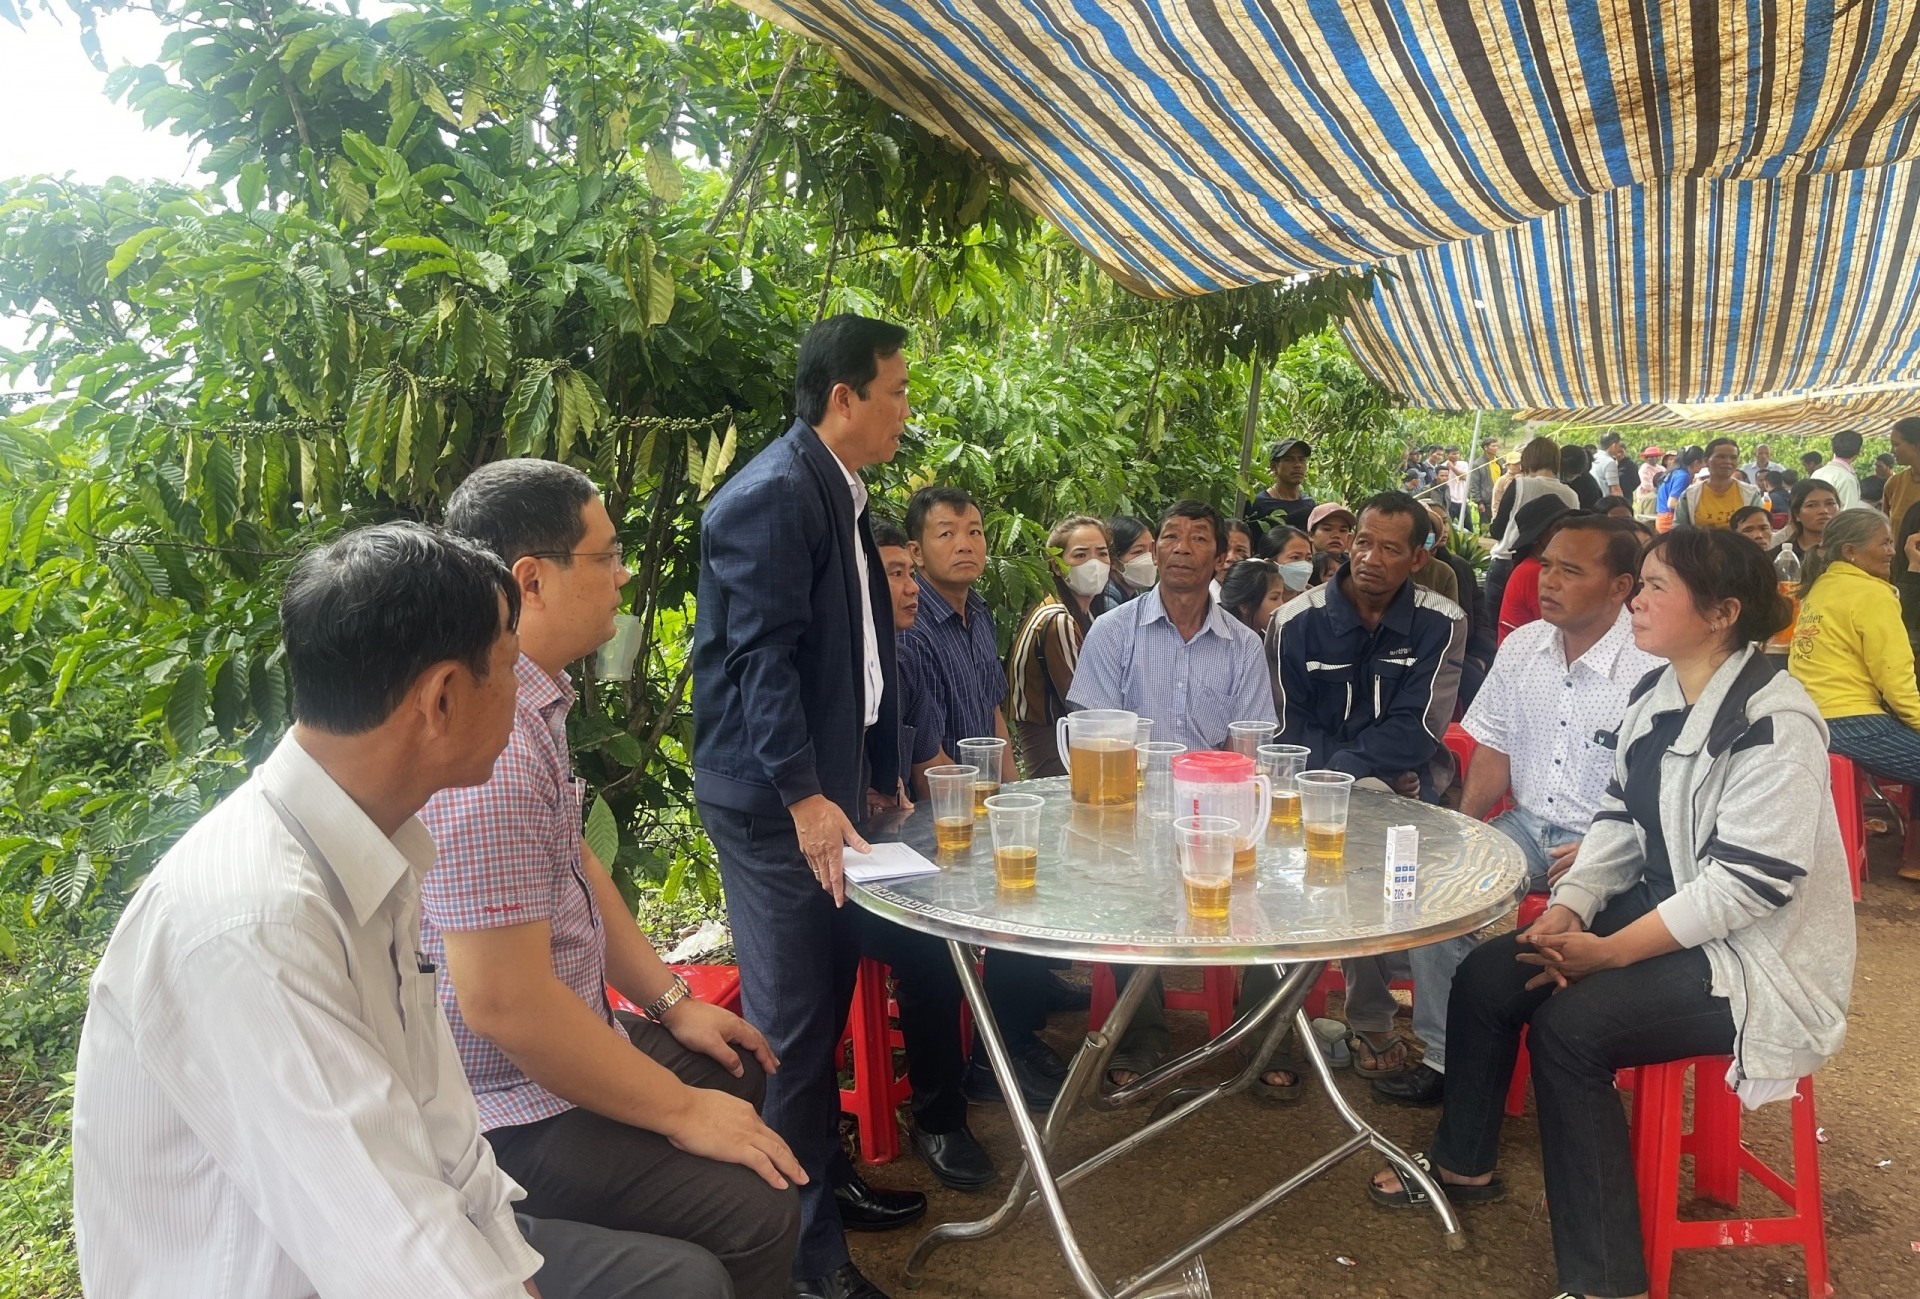 Ông Trịnh Văn Thảo - Phó Chủ tịch UBND huyện Bảo Lâm cùng đại diện các cơ quan, đơn vị của huyện và xã Lộc Phú đến thăm hỏi, chia buồn và trao kinh phí hỗ trợ gia đình 2 cháu nhỏ bị đuối nước